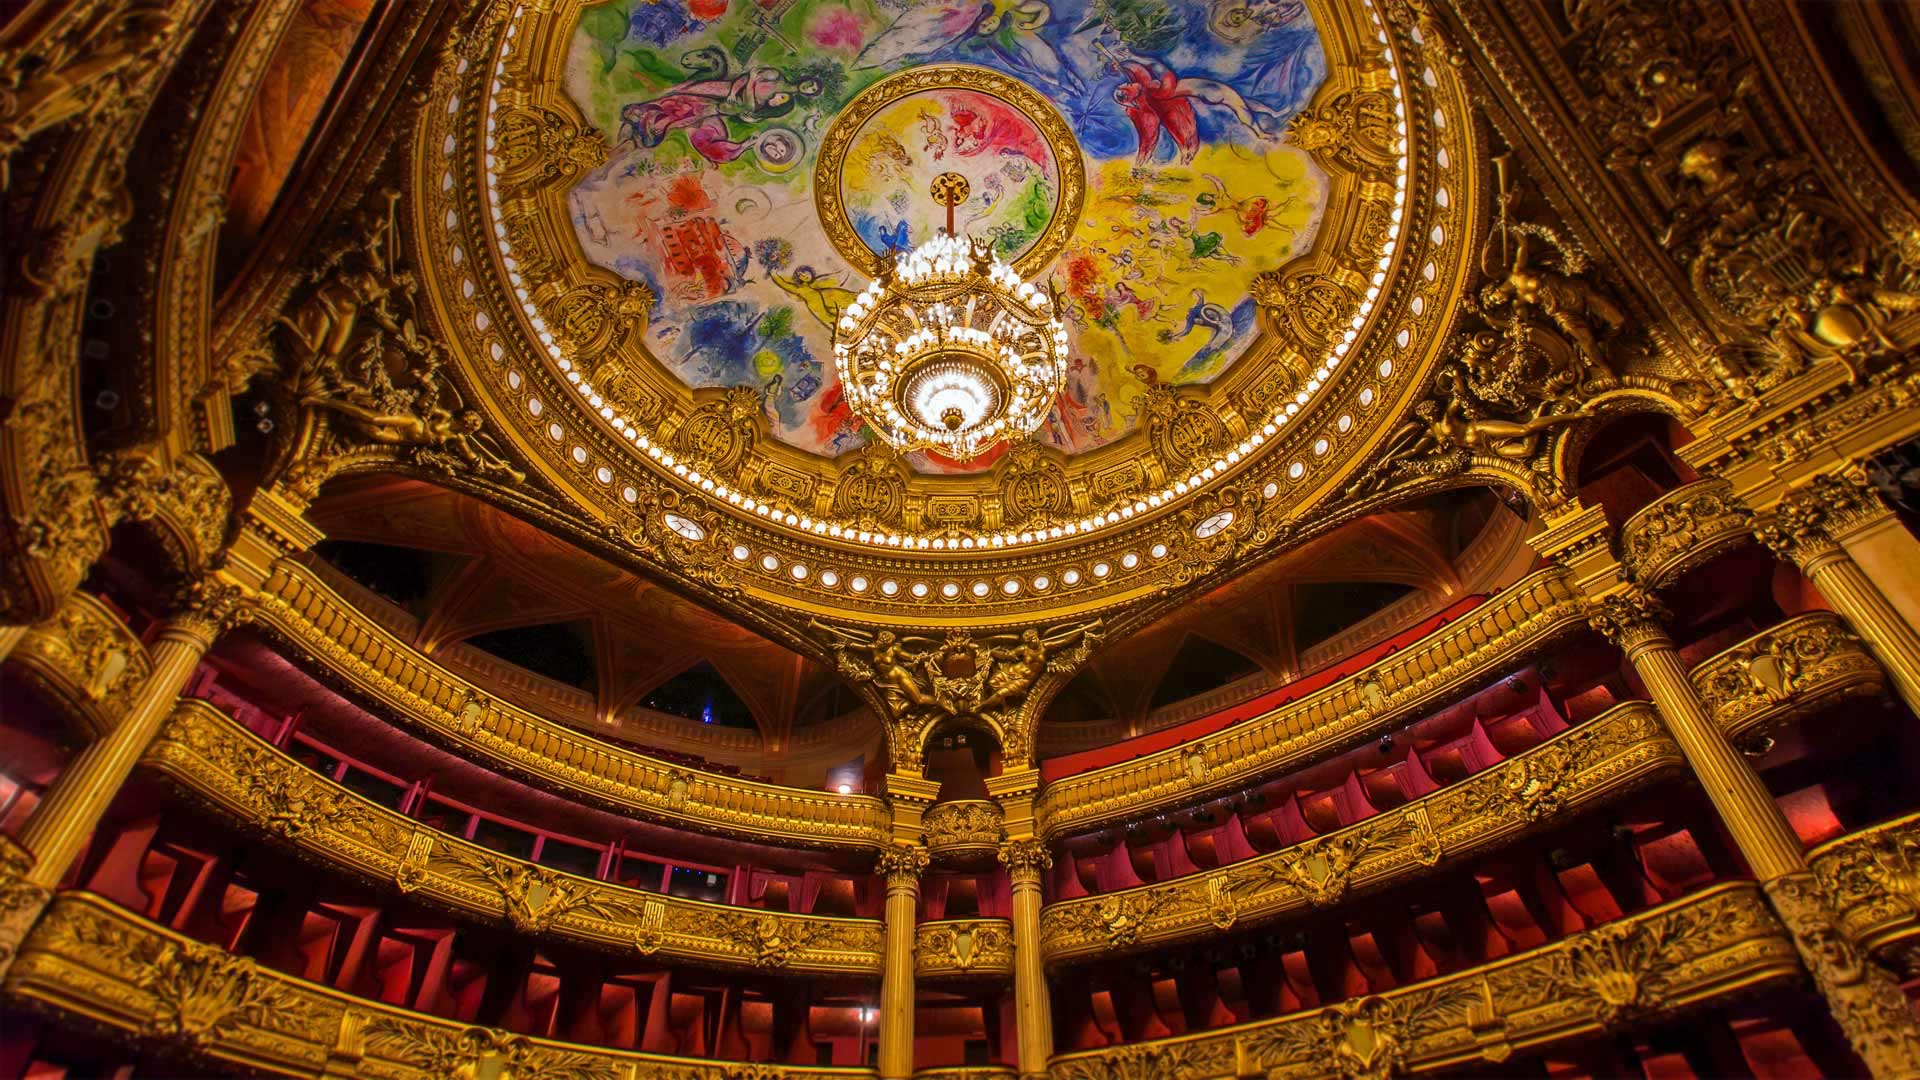 巴黎歌剧院穹顶上的夏加尔画作 笨翁网